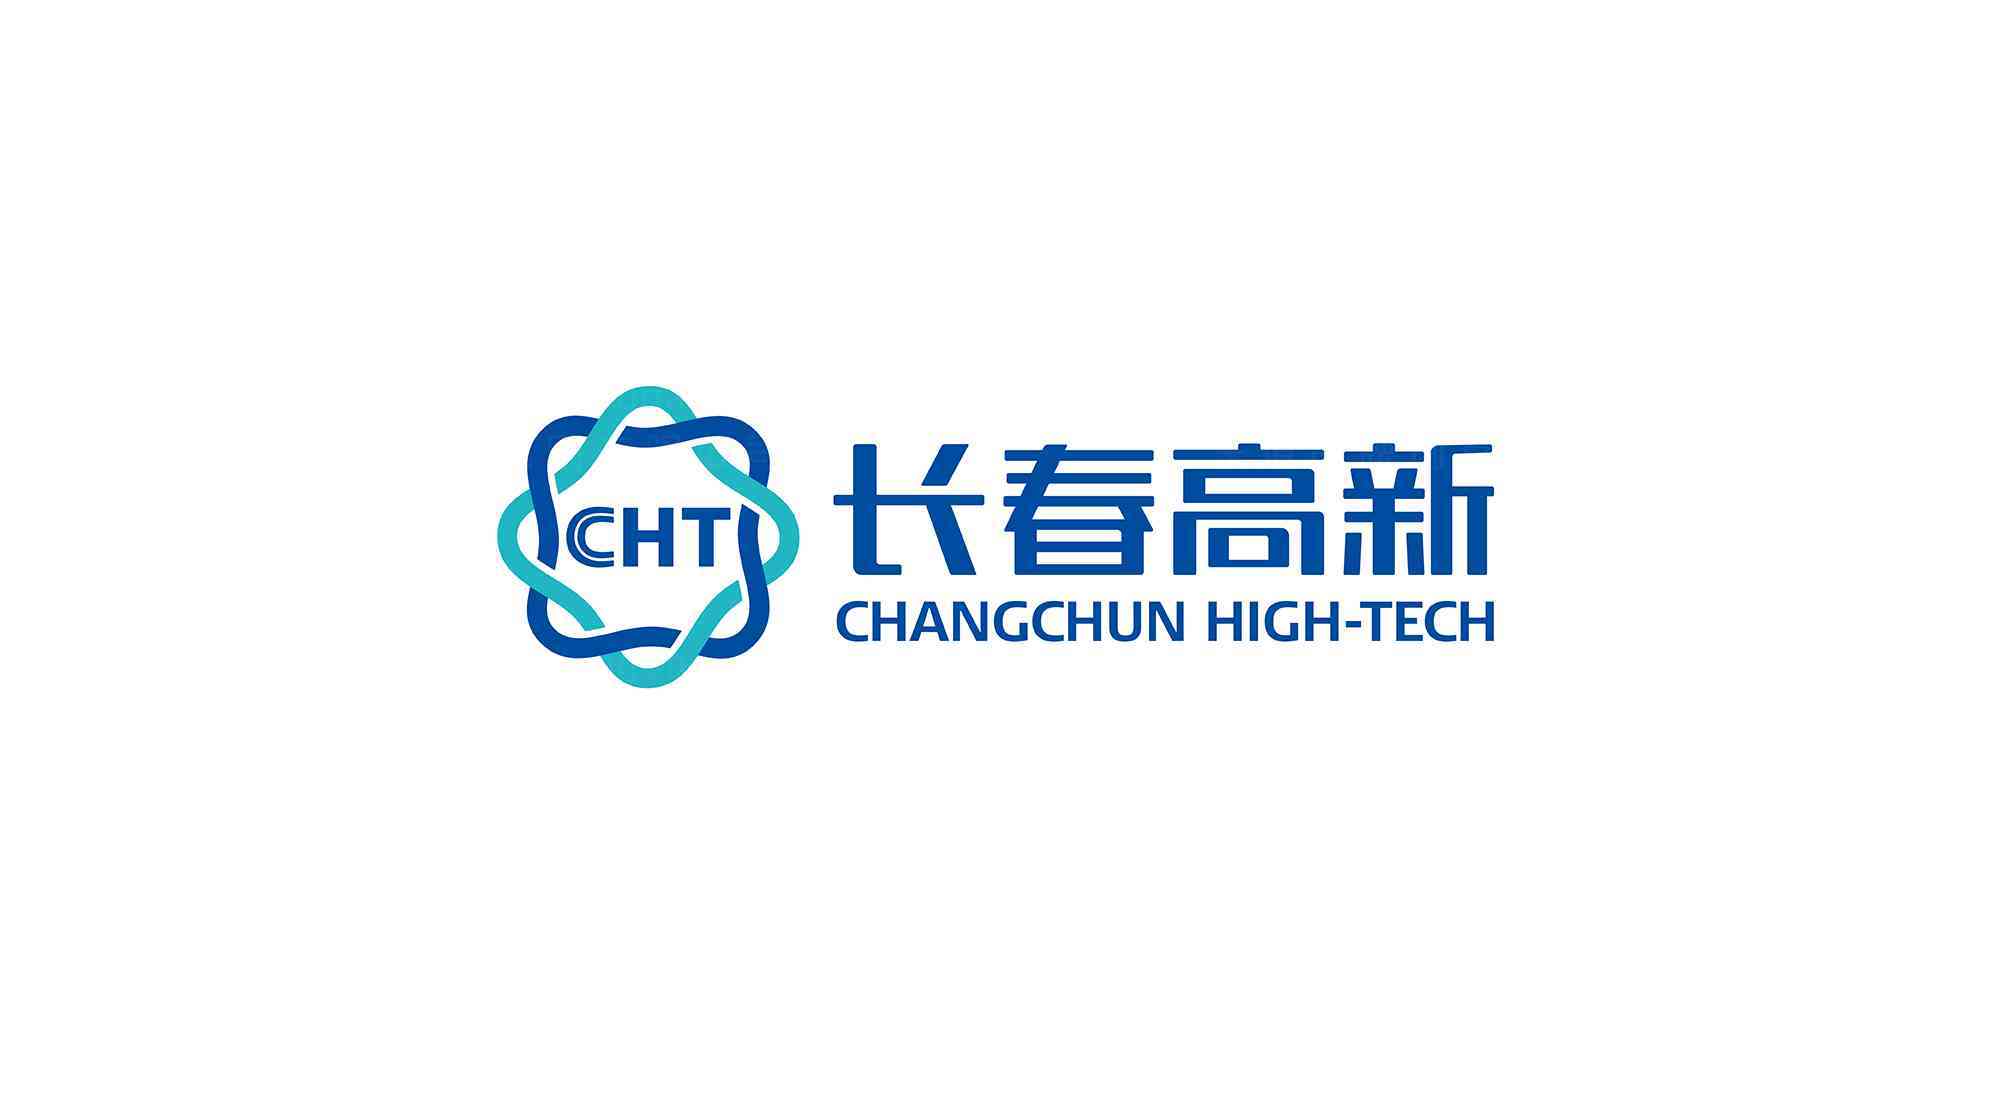 长春高新技术产业集团公司logo设计图片素材